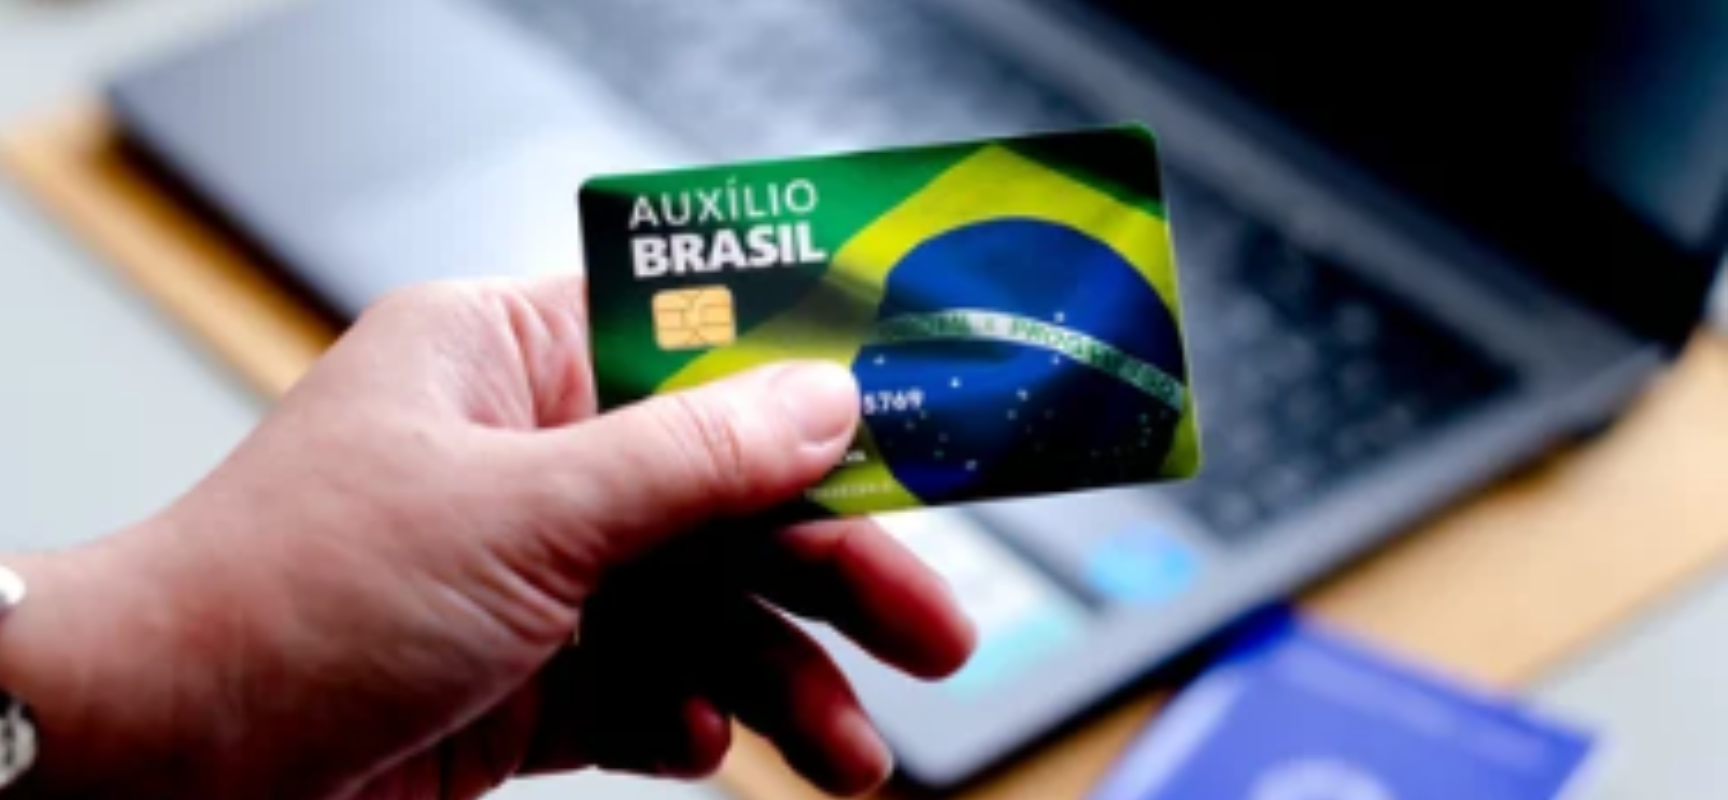 Recebeu o novo cartão do Auxílio Brasil com função débito? Saiba como  cadastrar a senha